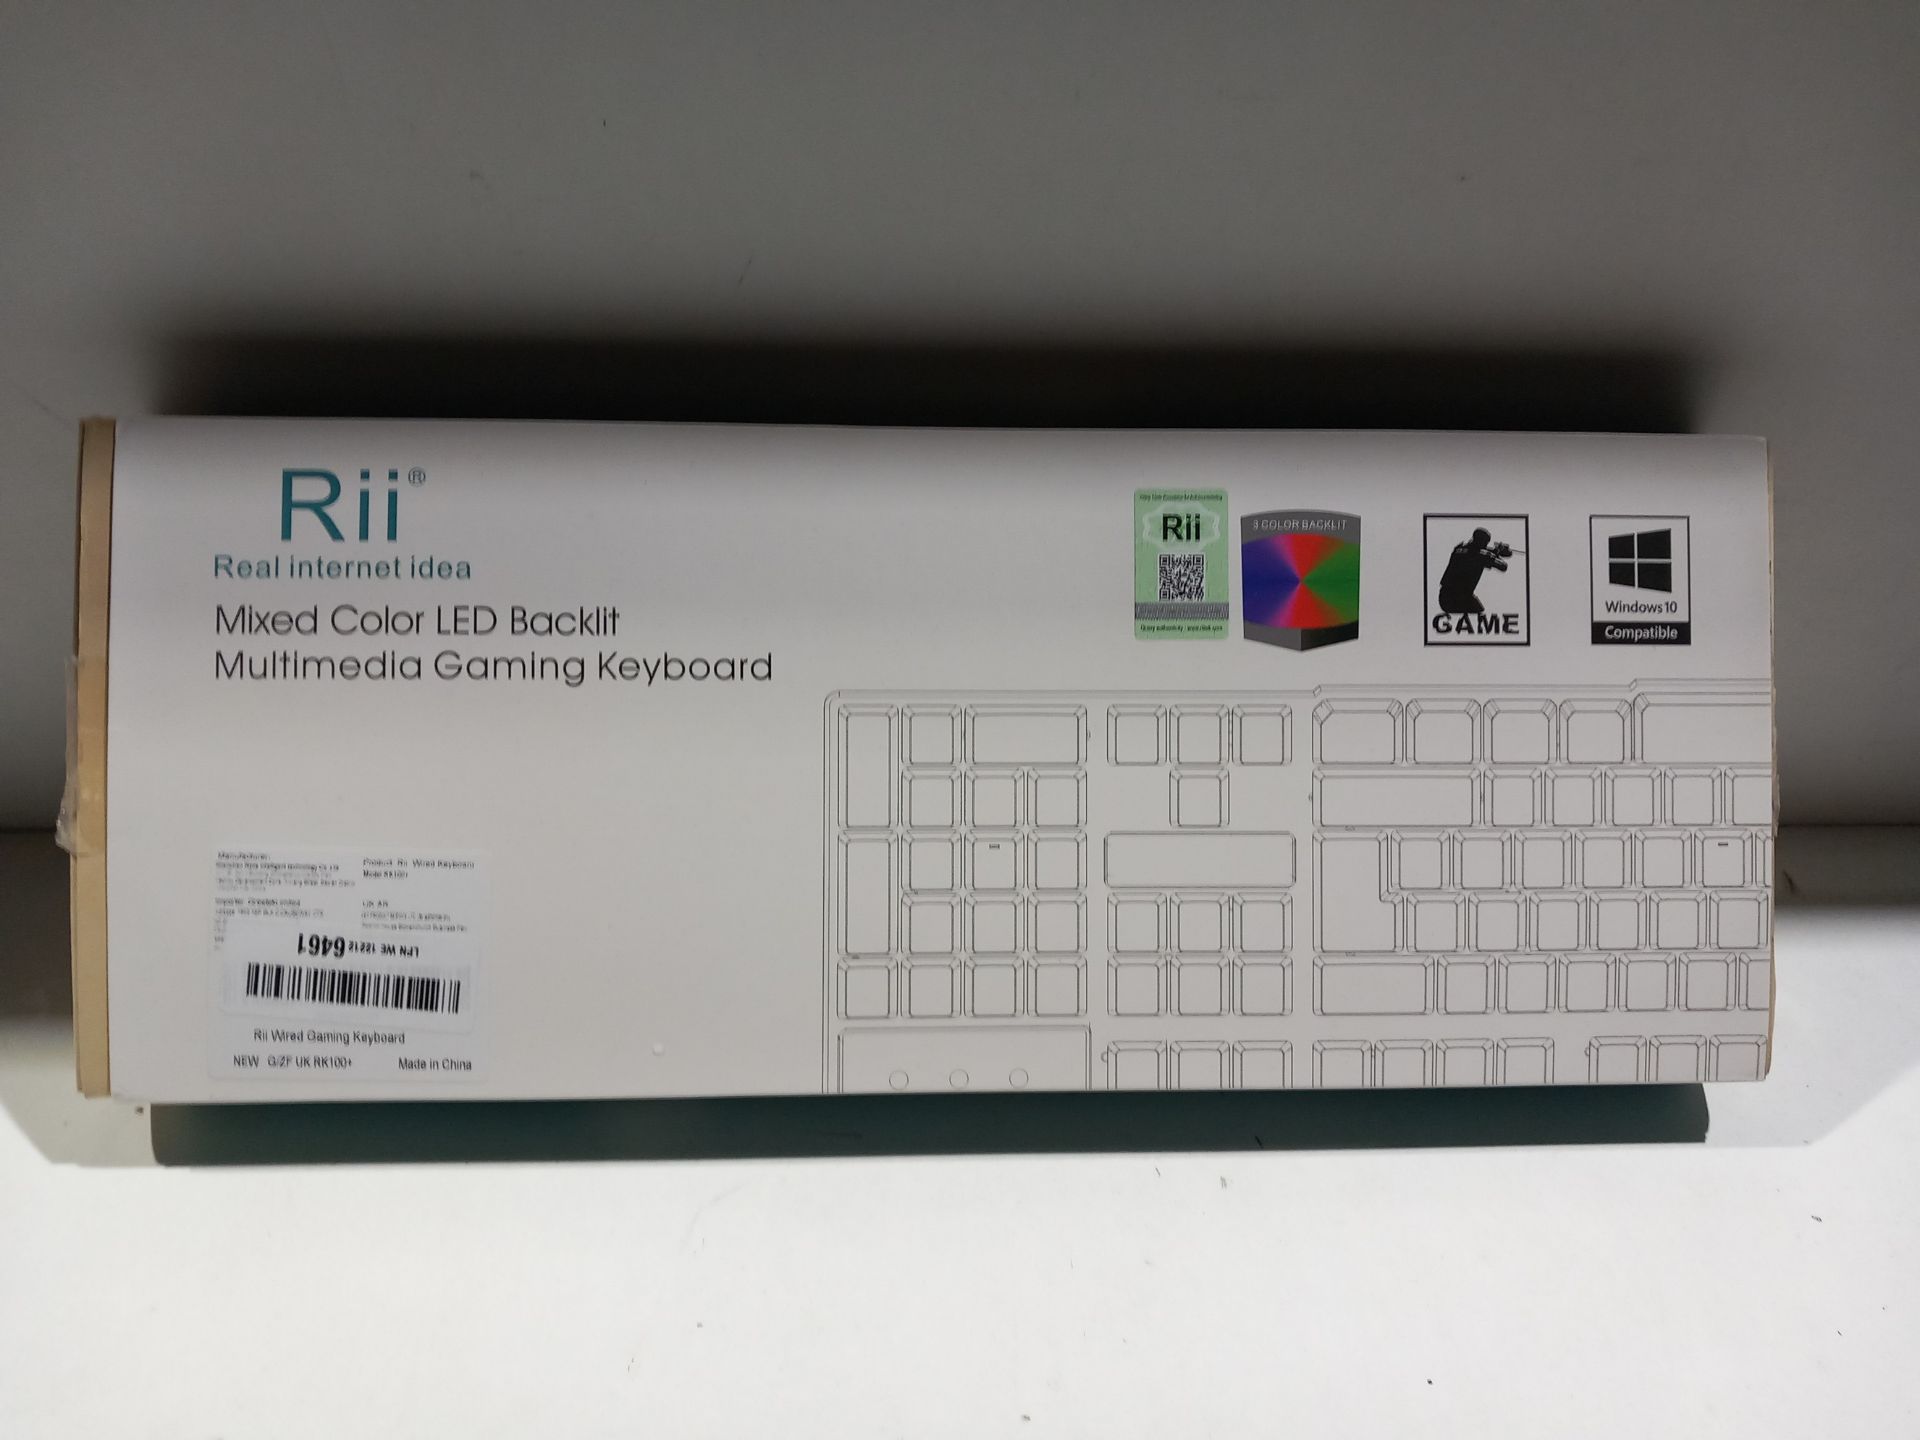 RRP £15.73 Bactlit Gaming Keyboard - Image 2 of 2